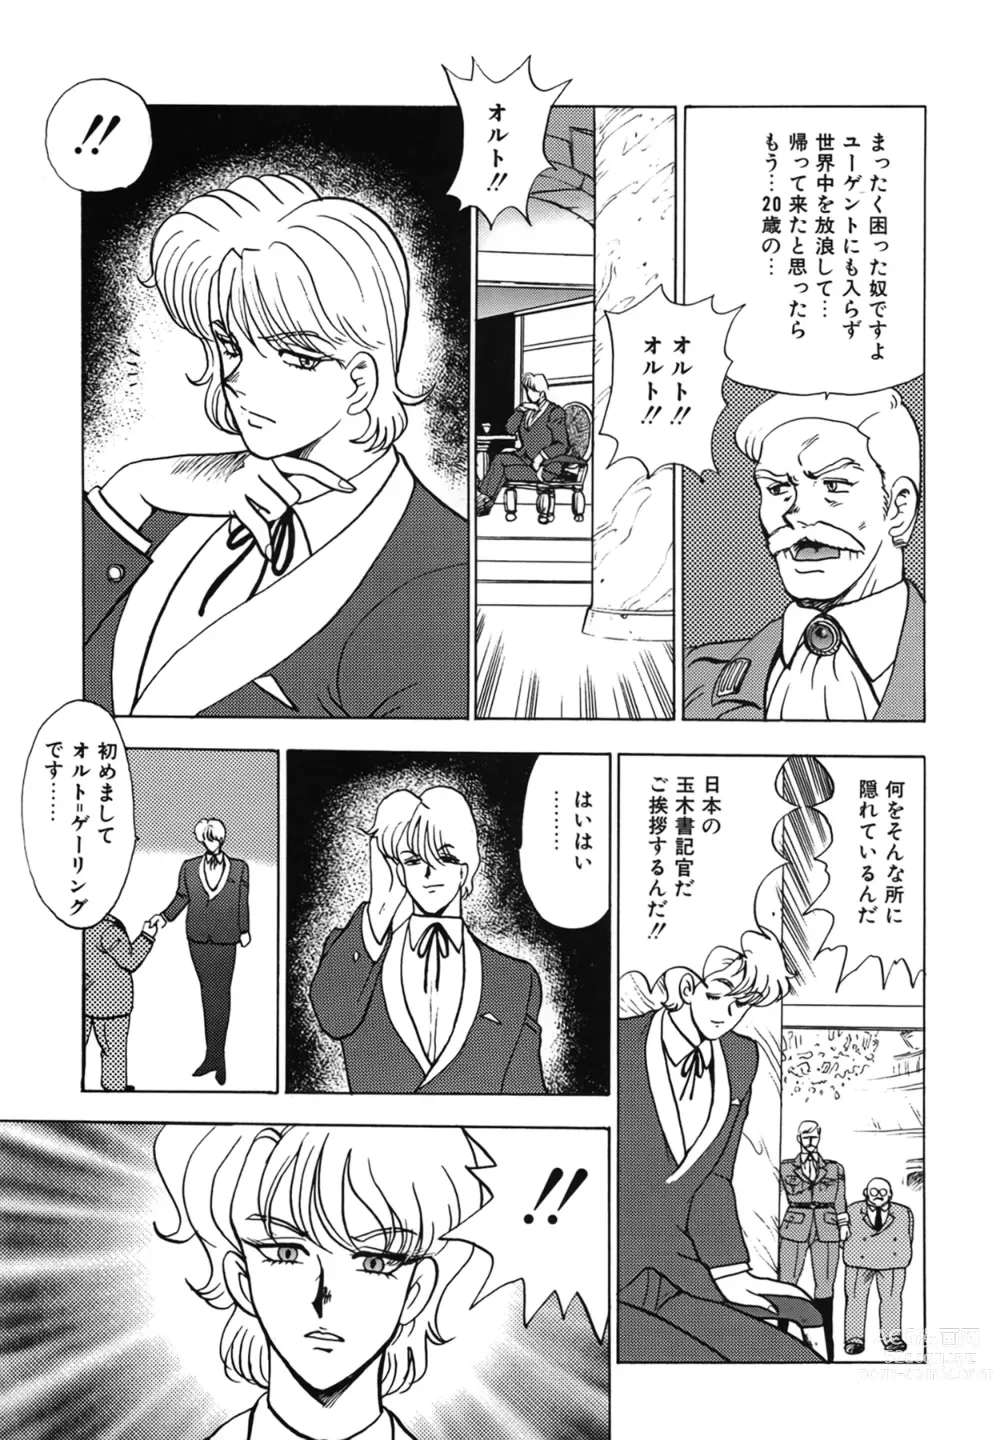 Page 7 of manga Inbi Teikoku